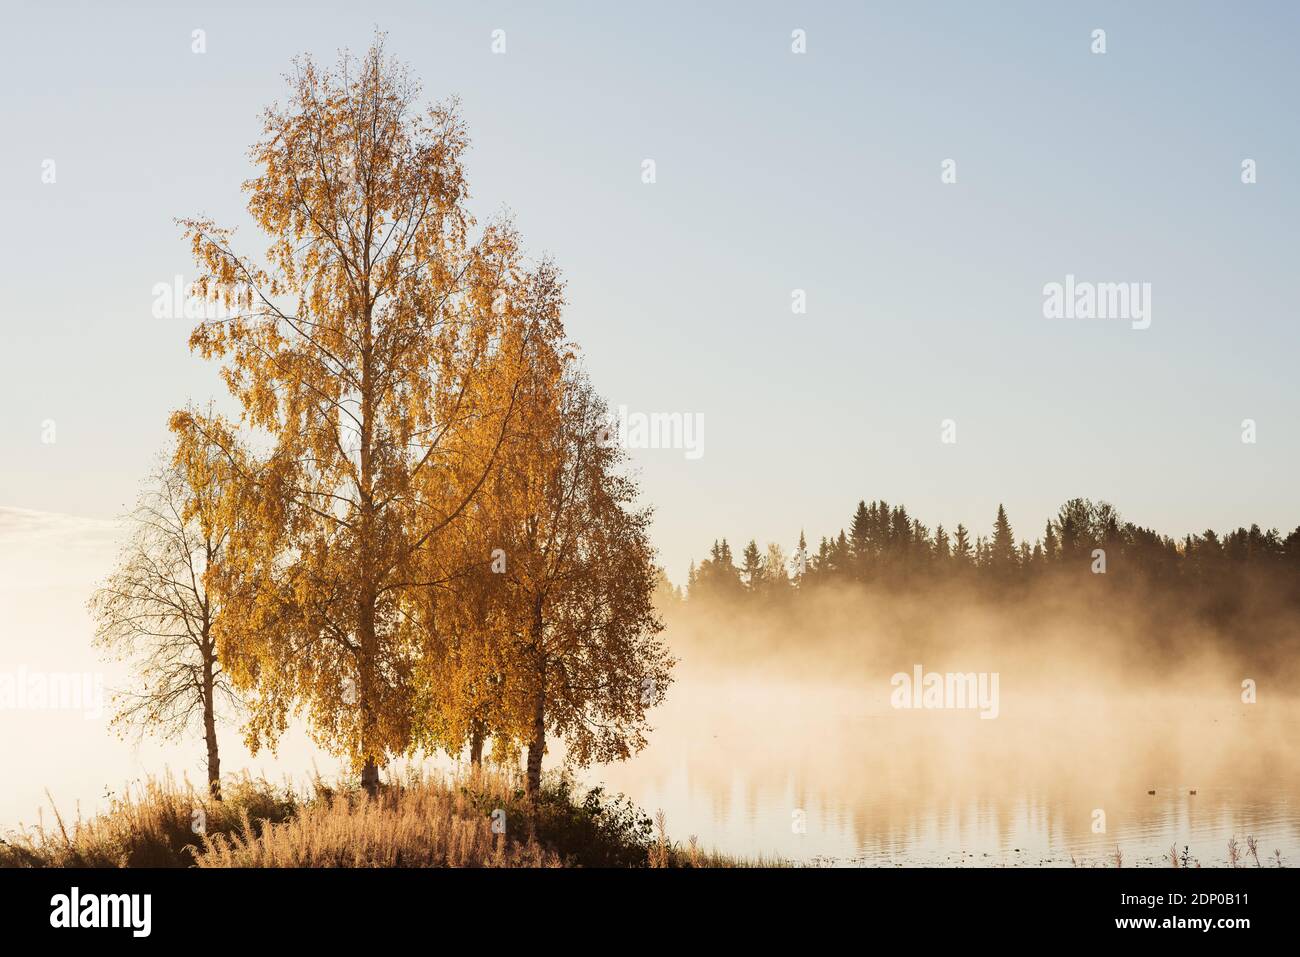 Autumn trees at lake Stock Photo